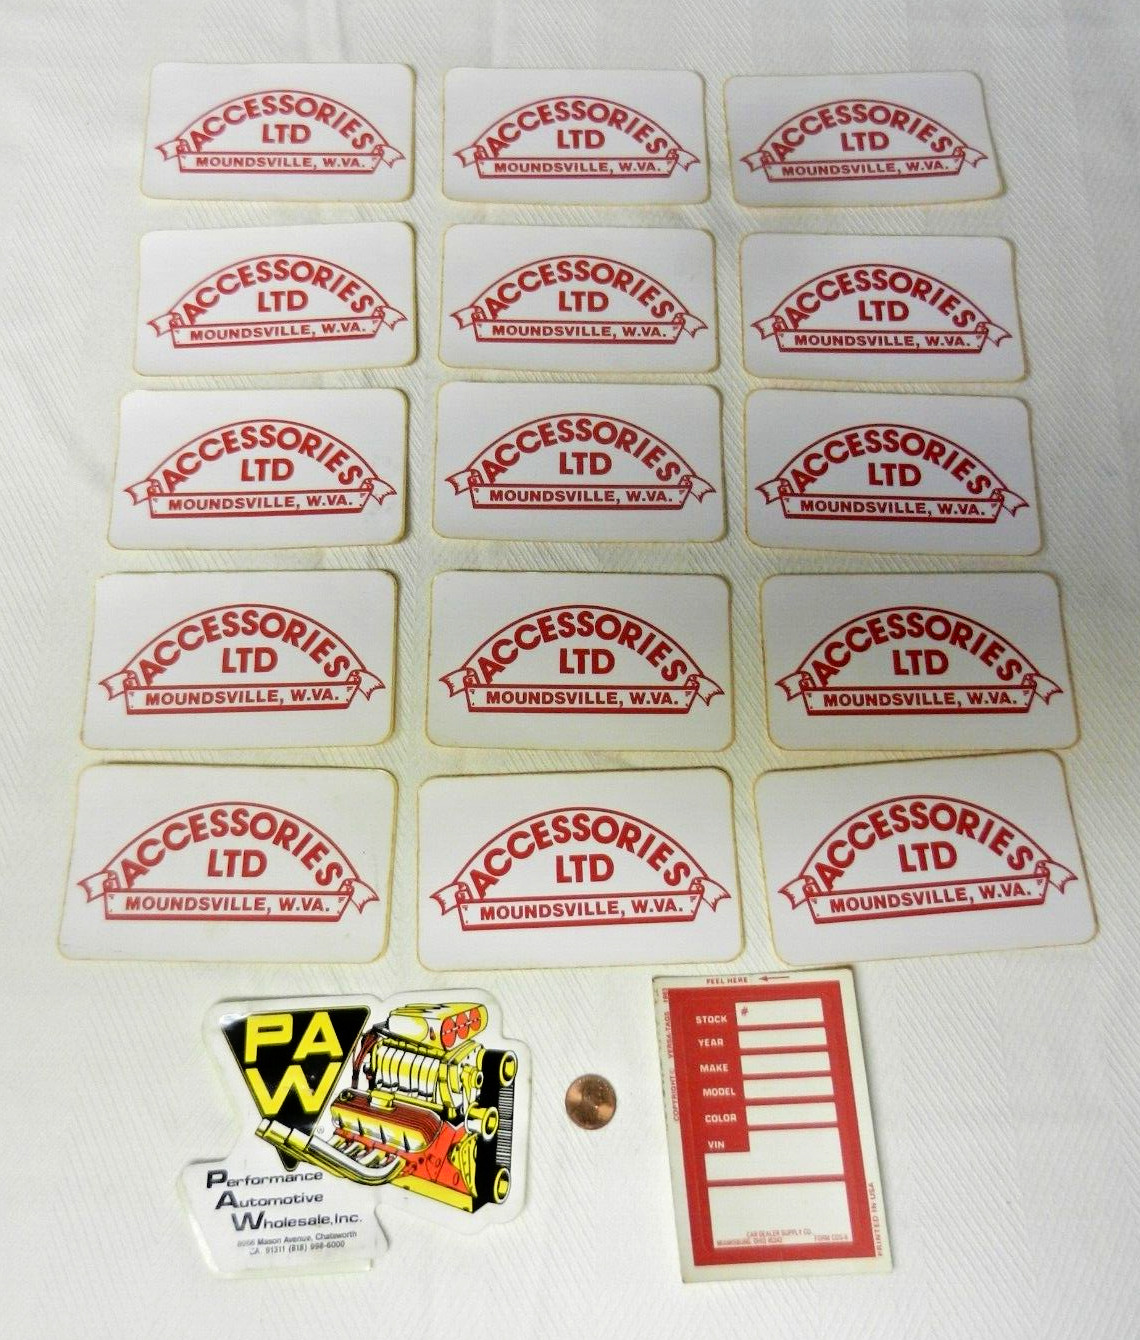 Accessories, Ltd. Moundsville West Virginia WVa Stickers 17 Total Items Vintage